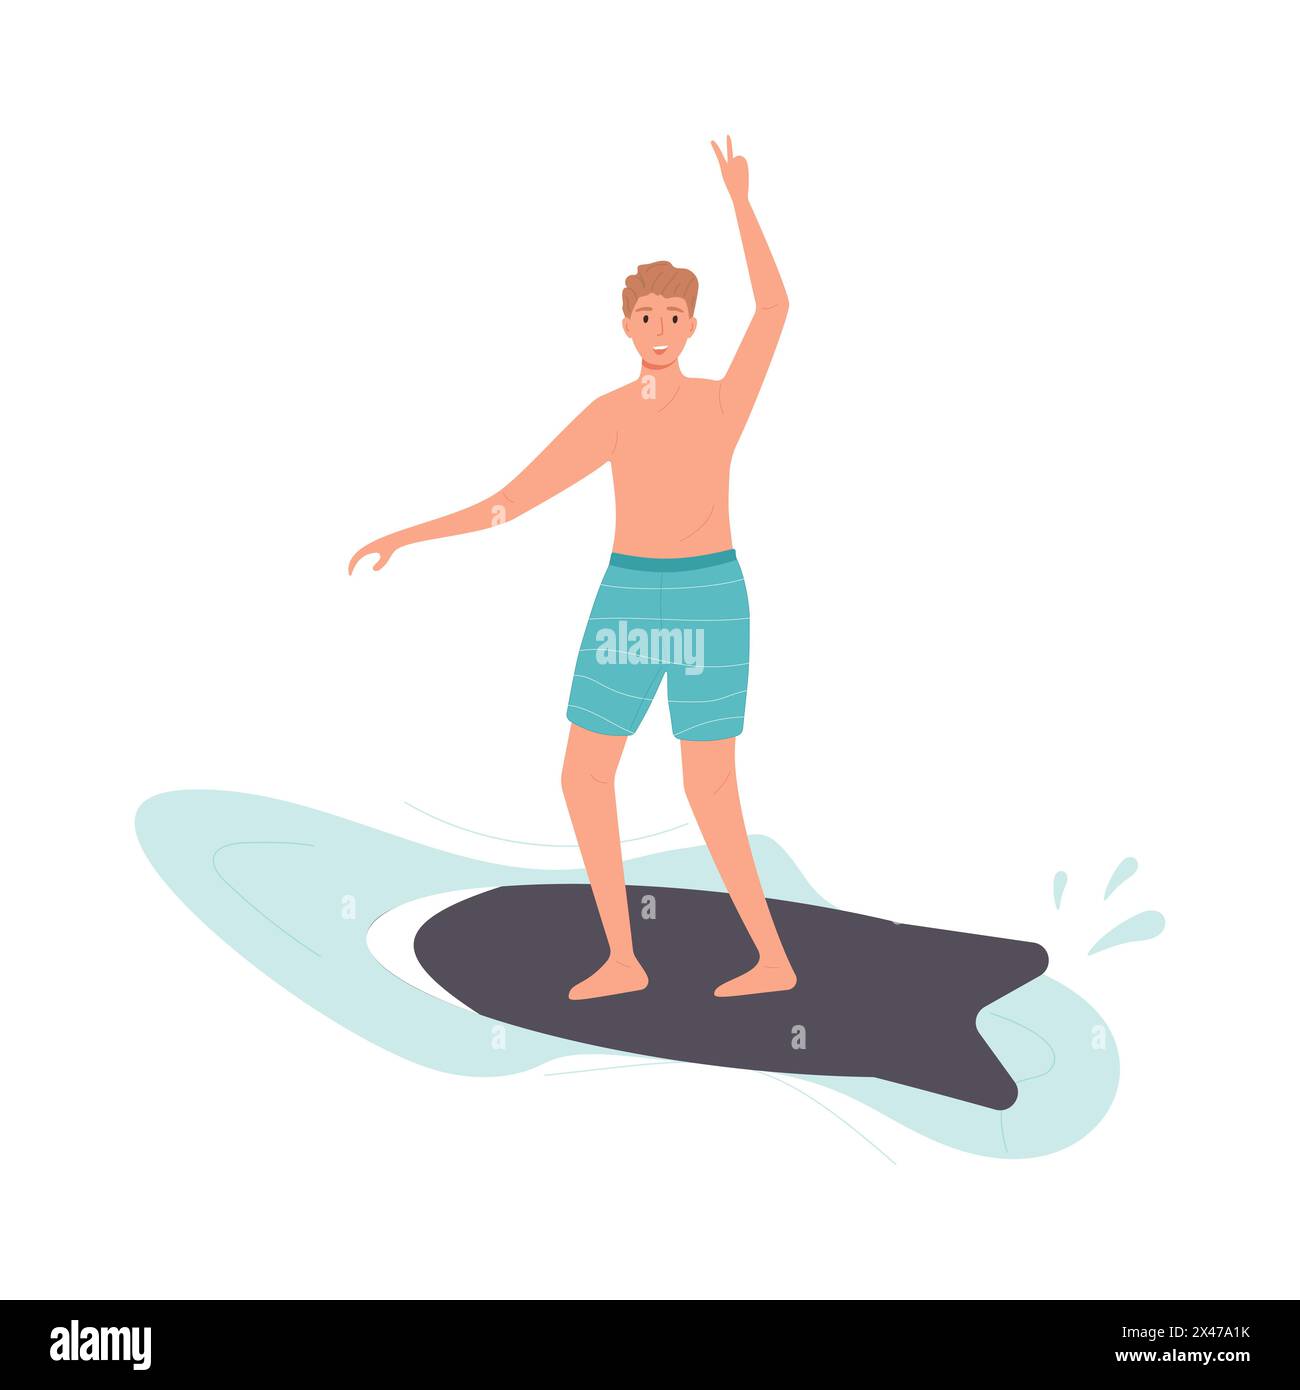 Junger Mann, der auf einer kleinen Welle in lässiger Kleidung surft Stock Vektor